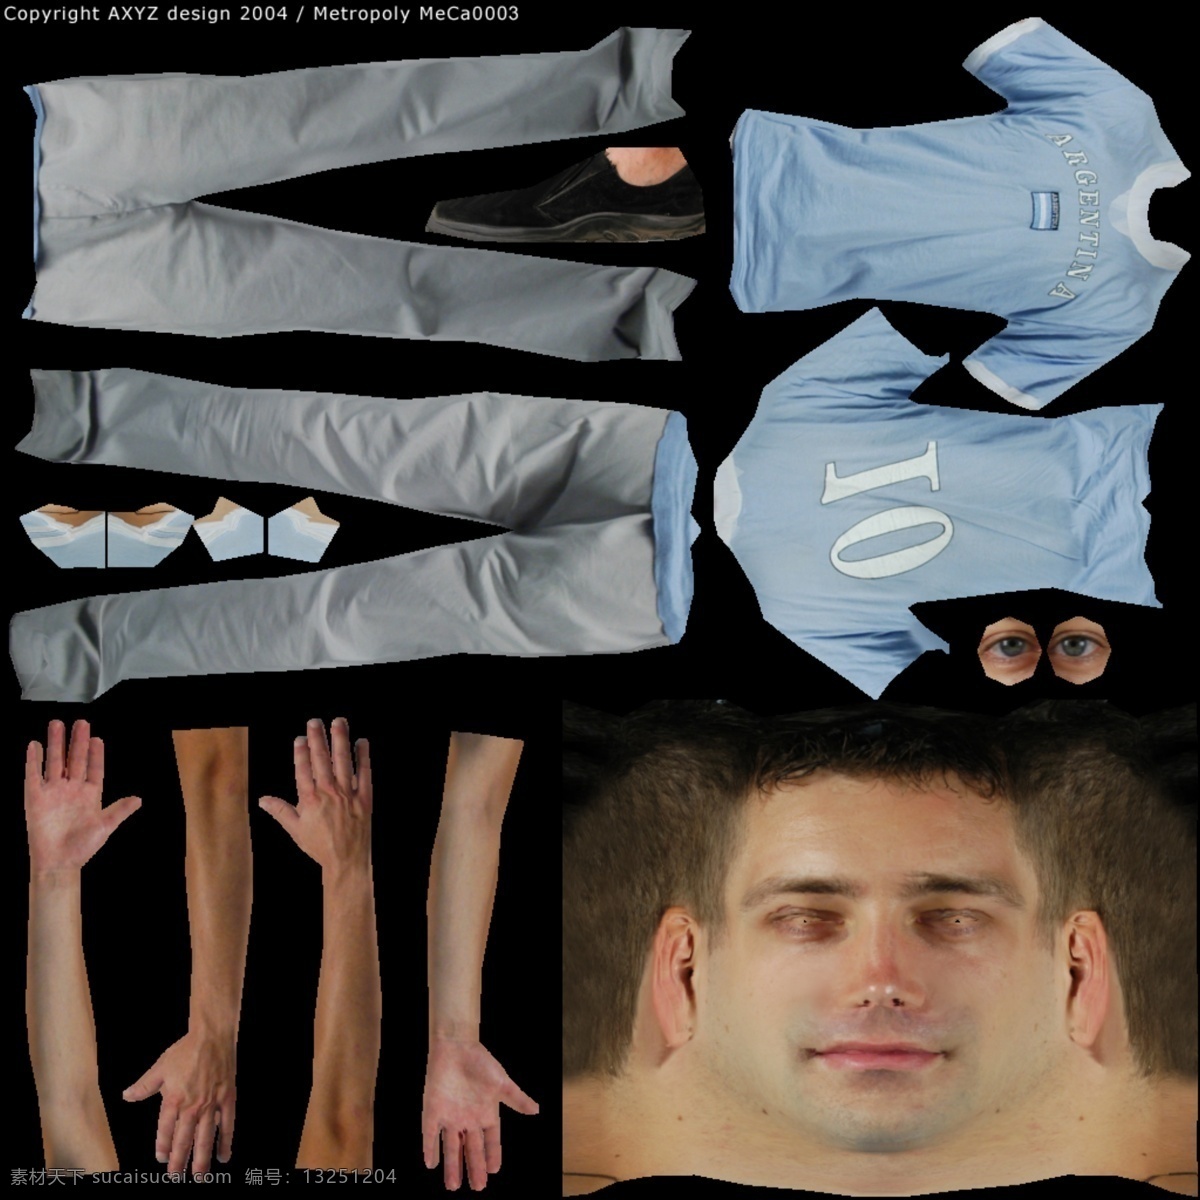 人物 男性 3d 模型 人体 人物模型素材 3d人物模型 男人模型素材 3d人体效果 模型免费下载 3d模型素材 其他3d模型